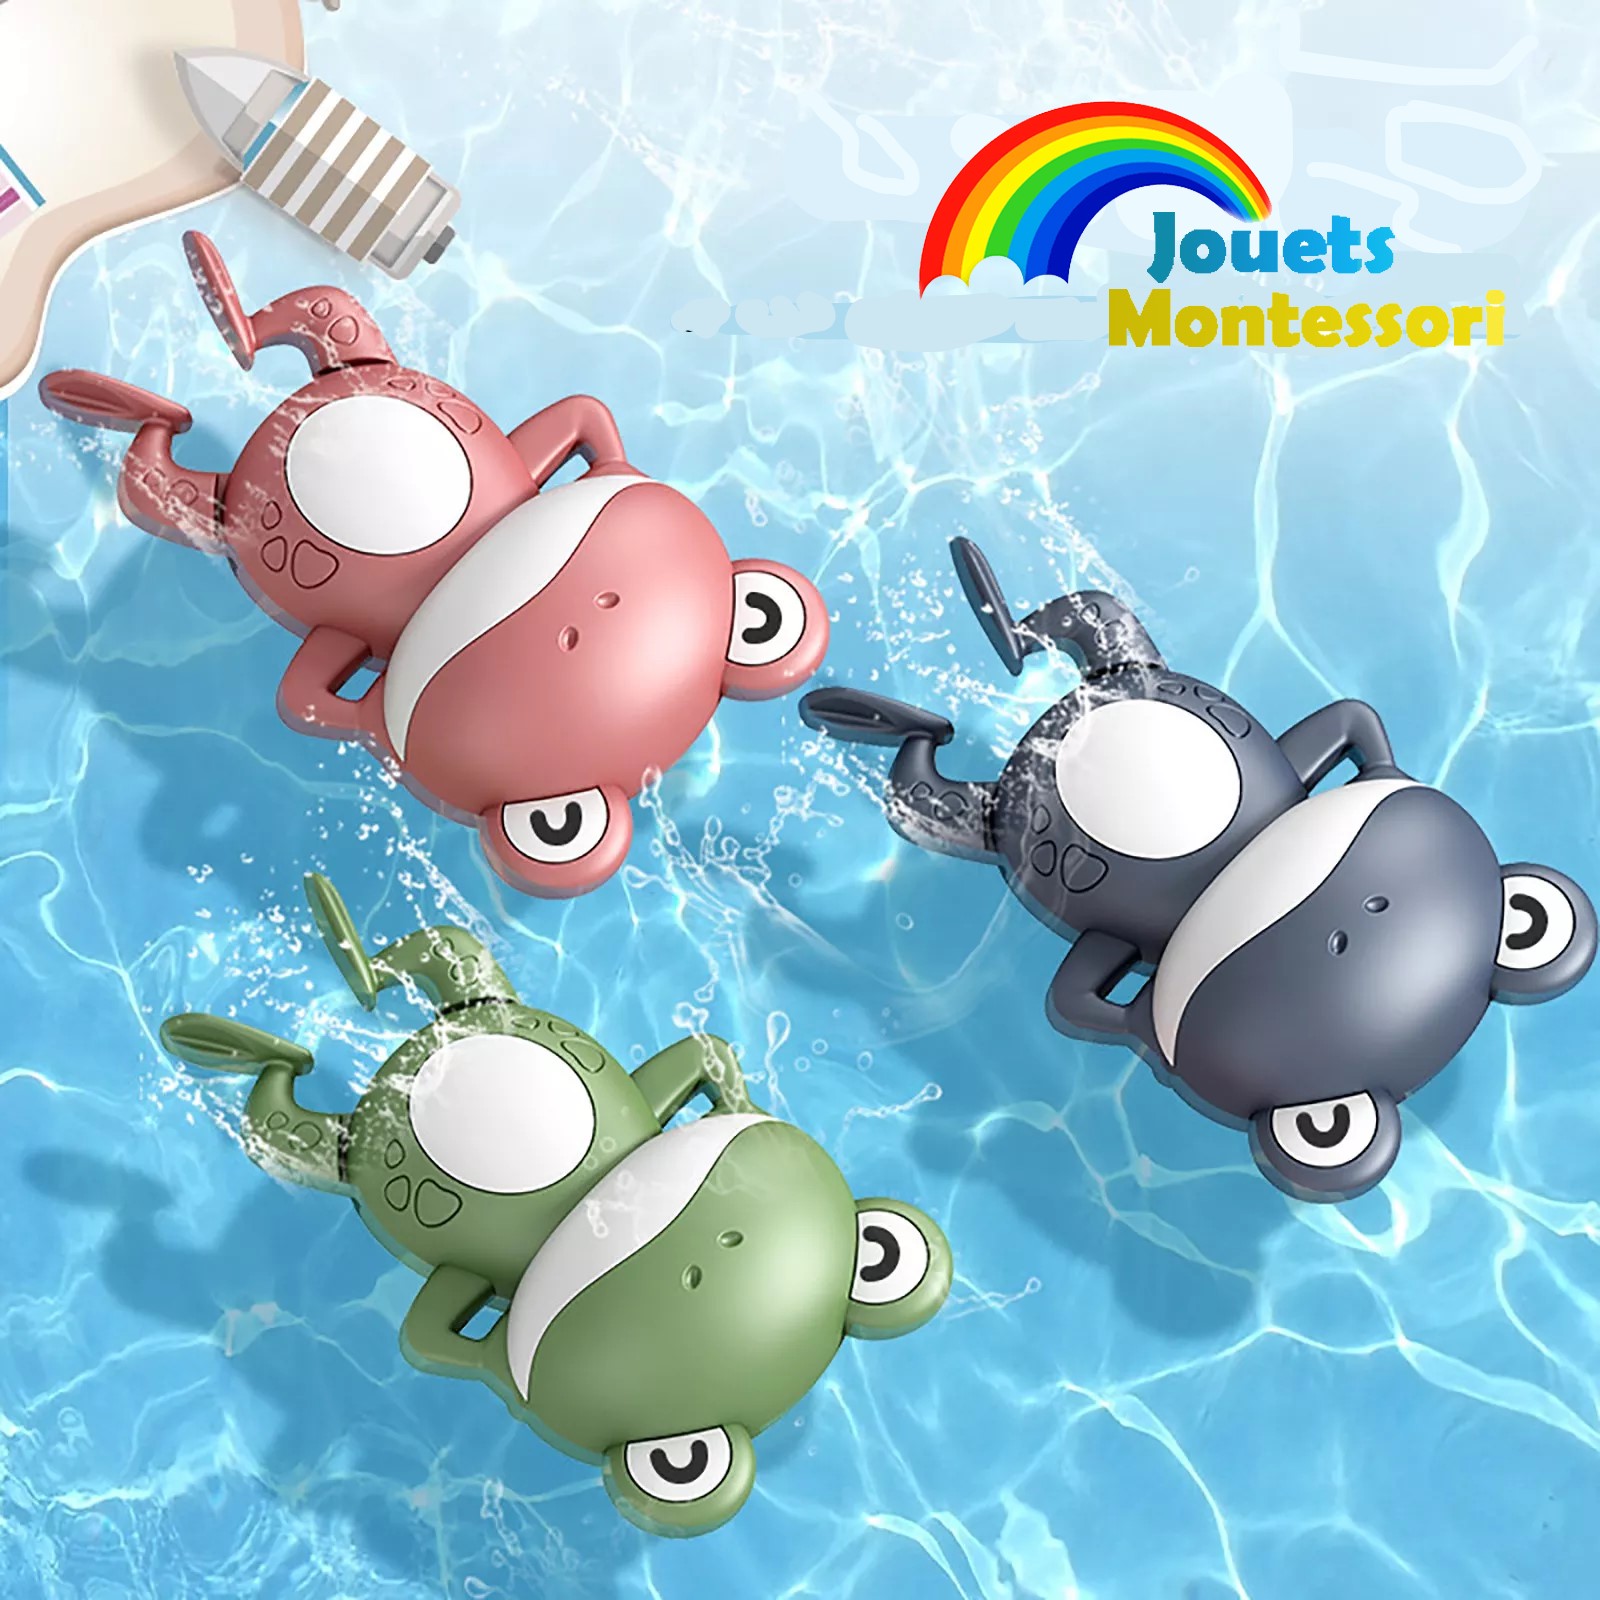 Jouets de bain en forme de grenouille – des jouets pour bebe